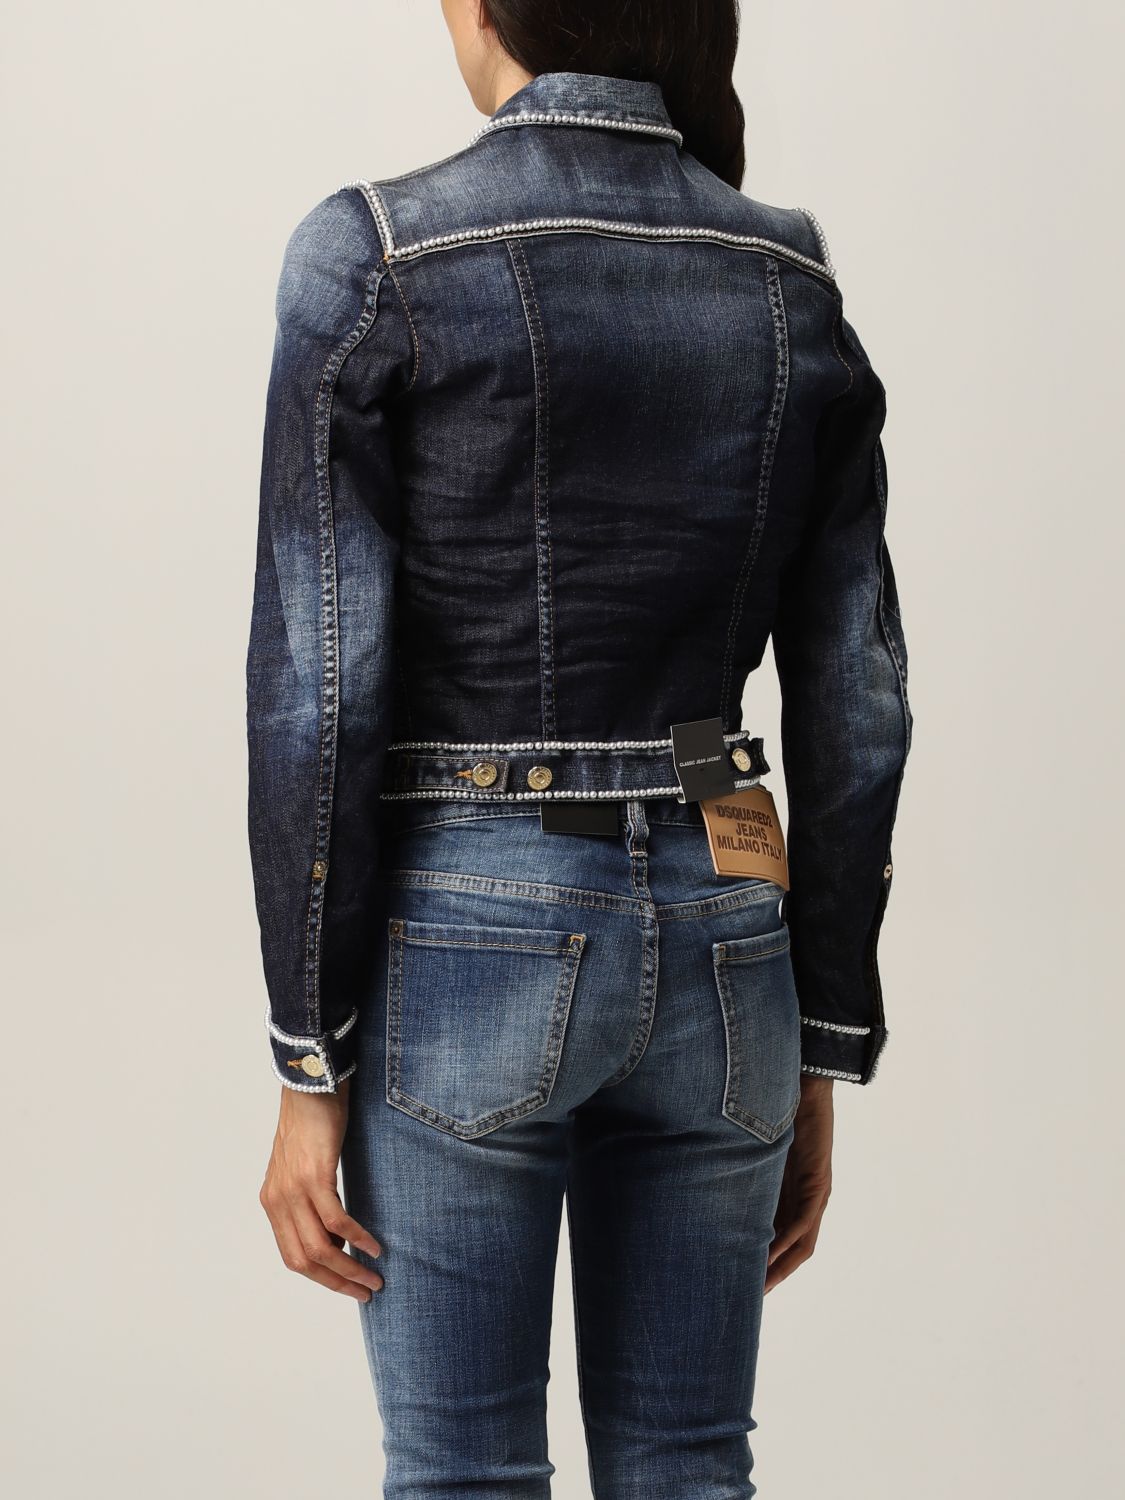 Solada Giacca di jeans con perle donna: in offerta a 19.99€ su